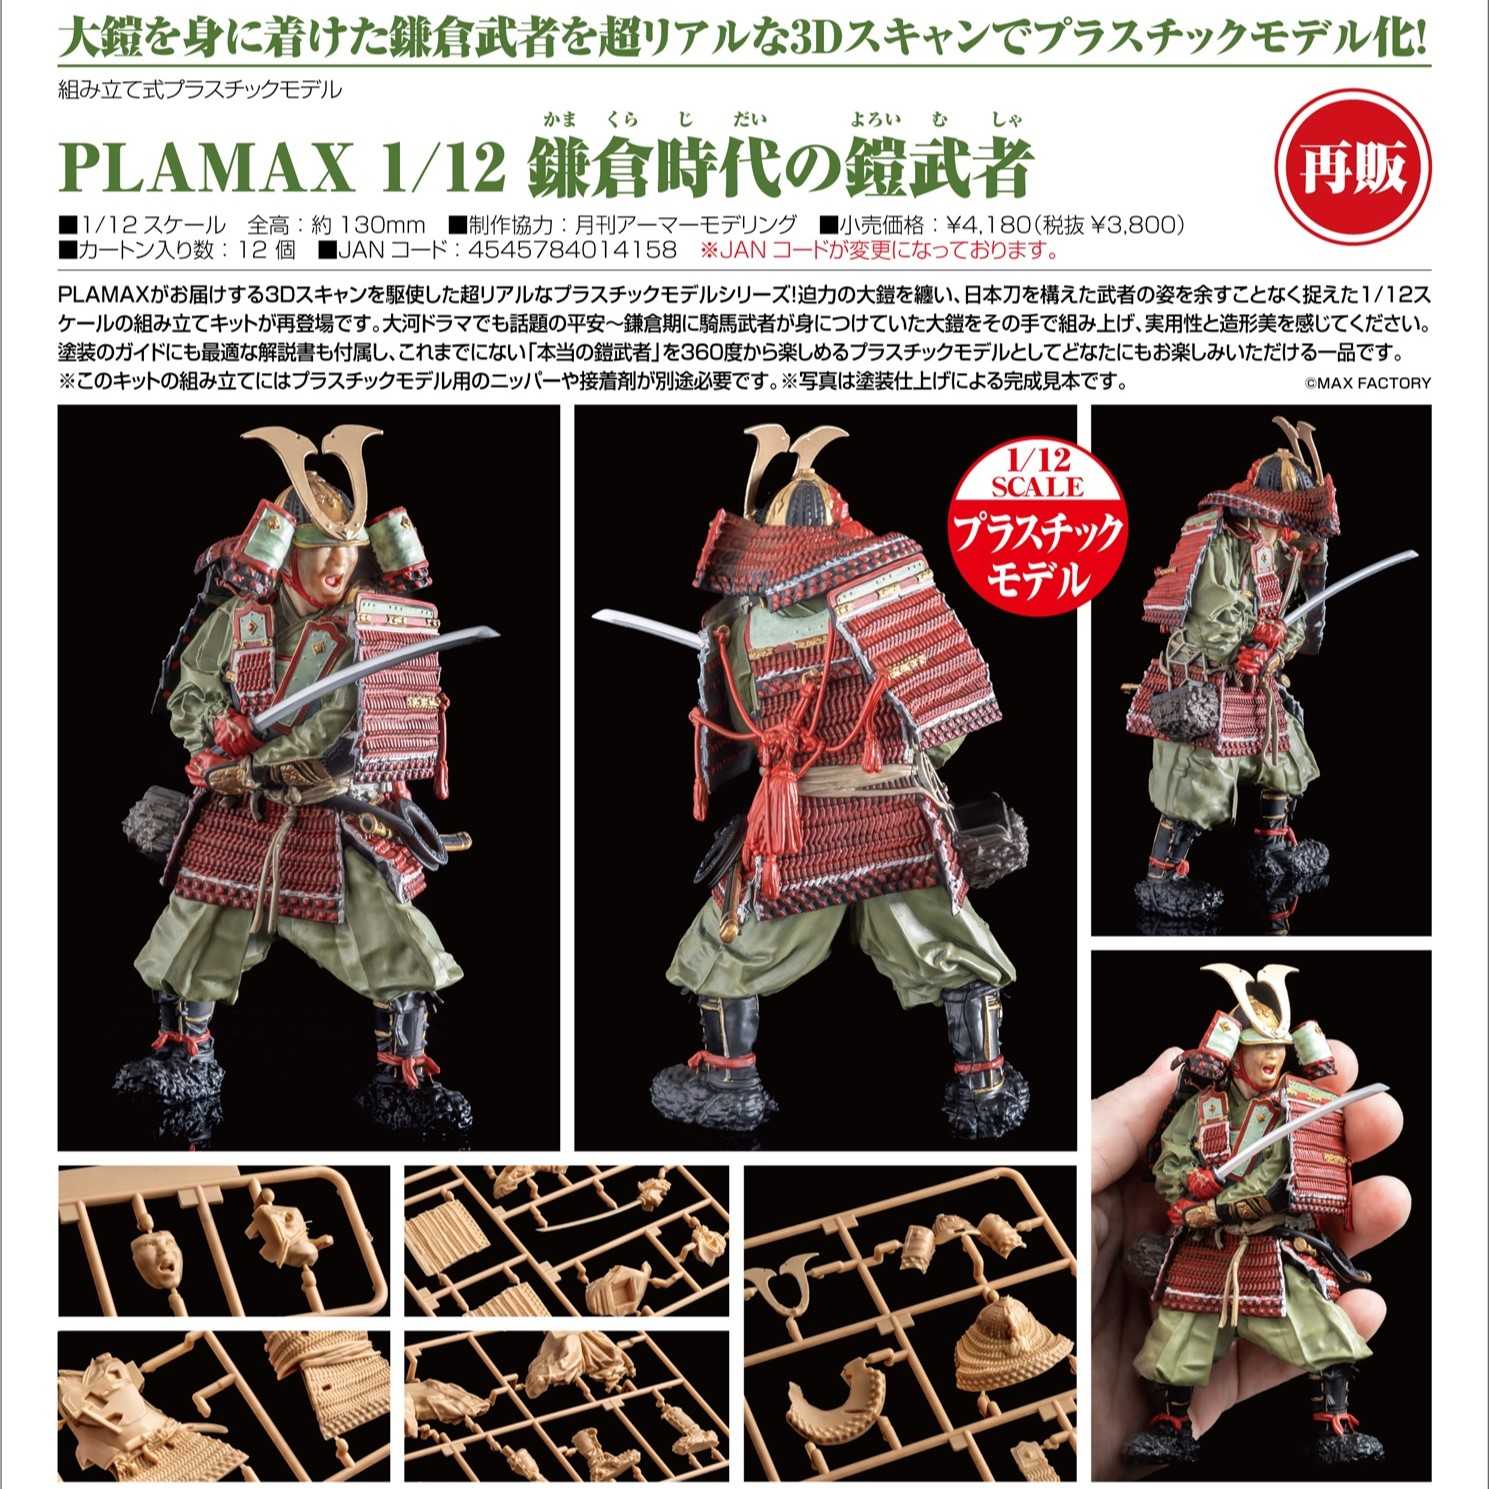 【酷比樂】預購24/11月 MF 代理版 PLAMAX 鎌倉時代的盔甲武士 組裝模型 再販 0512